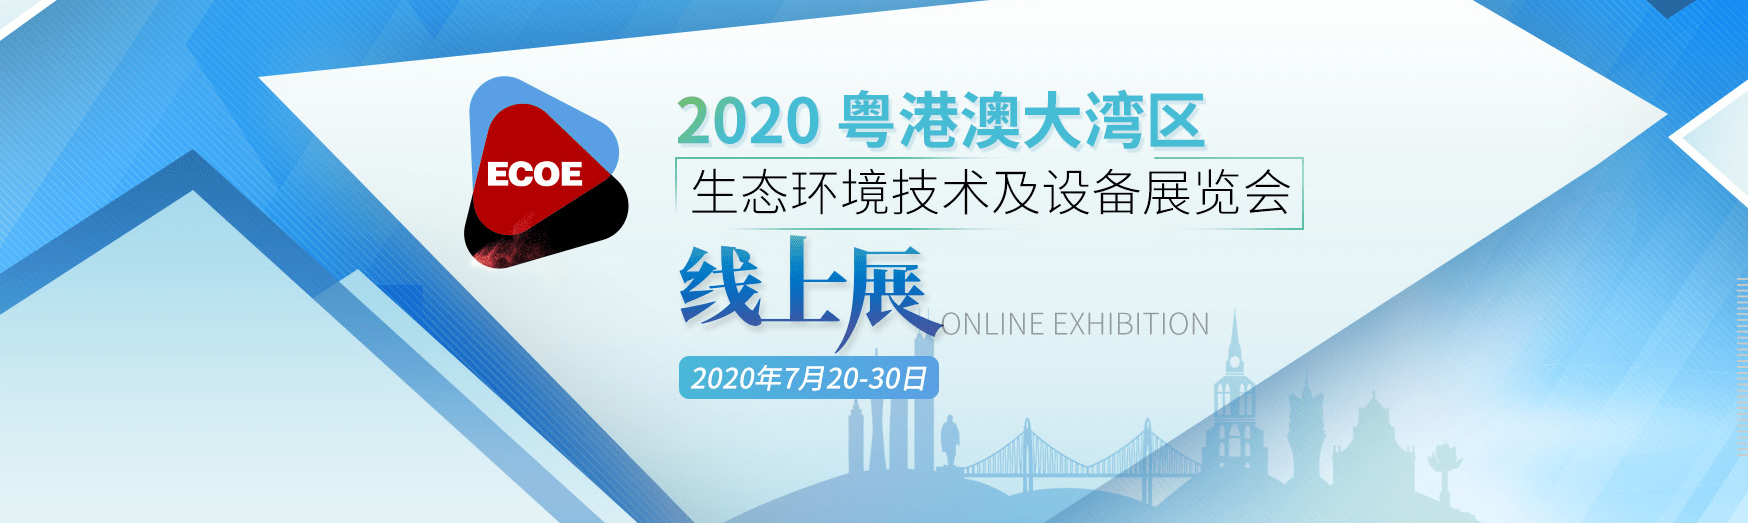 线上+线下完美融合 2020深圳环保展11月3-5日盛大启幕